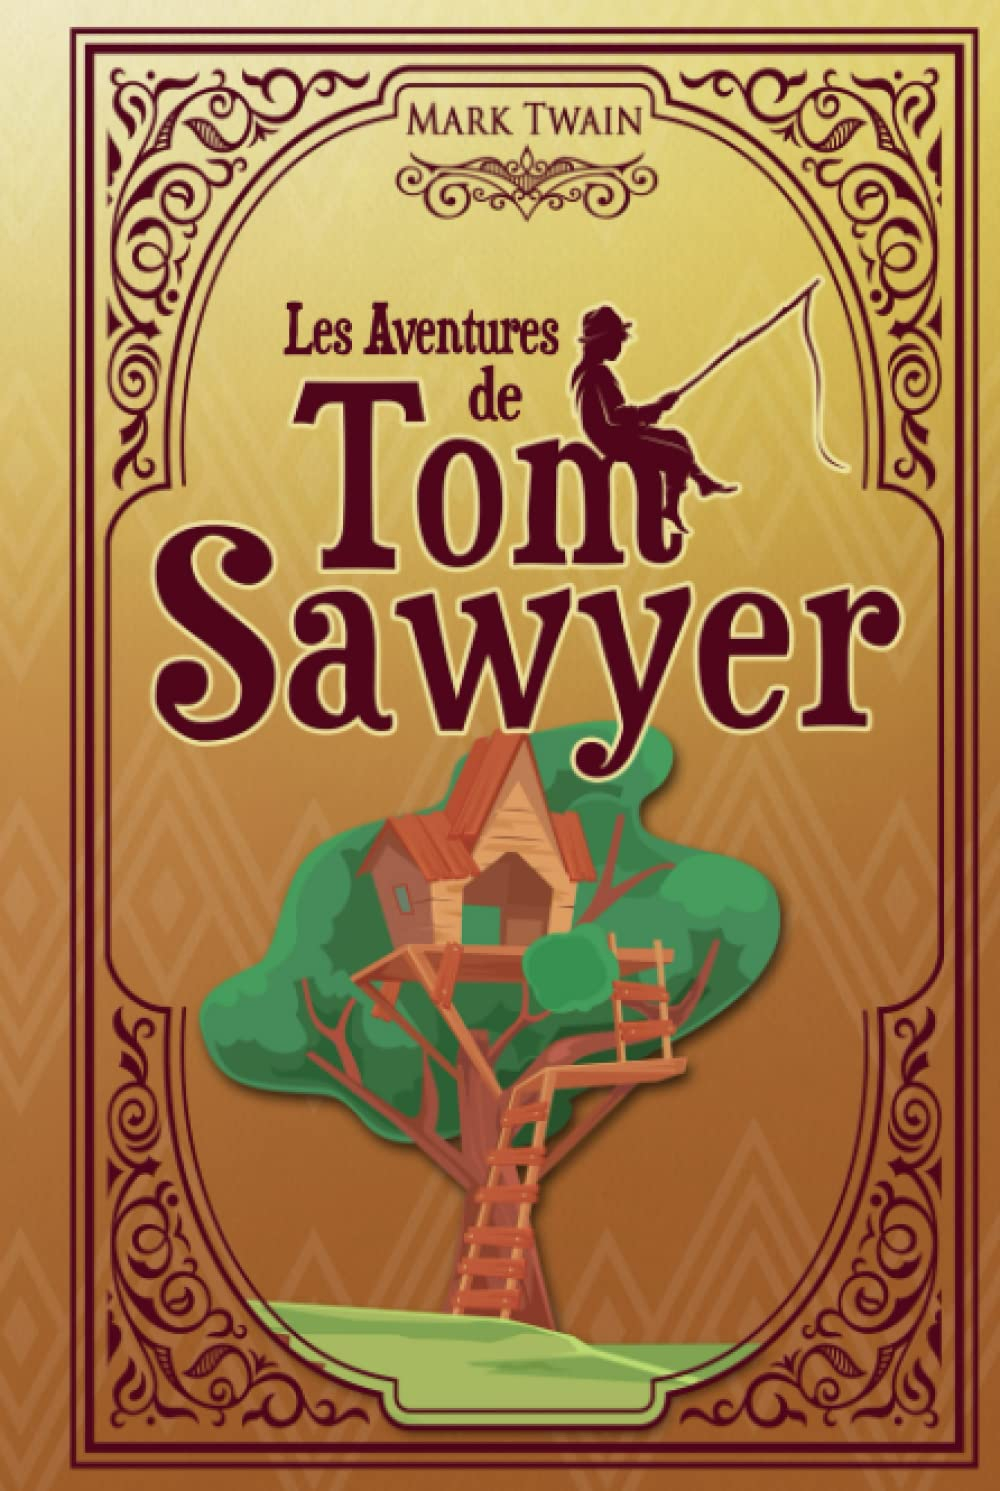 Les aventures de Tom Sawyer - Mark Twain: Édition illustrée | 233 pages Format 15,24 cm x 22,86 cm